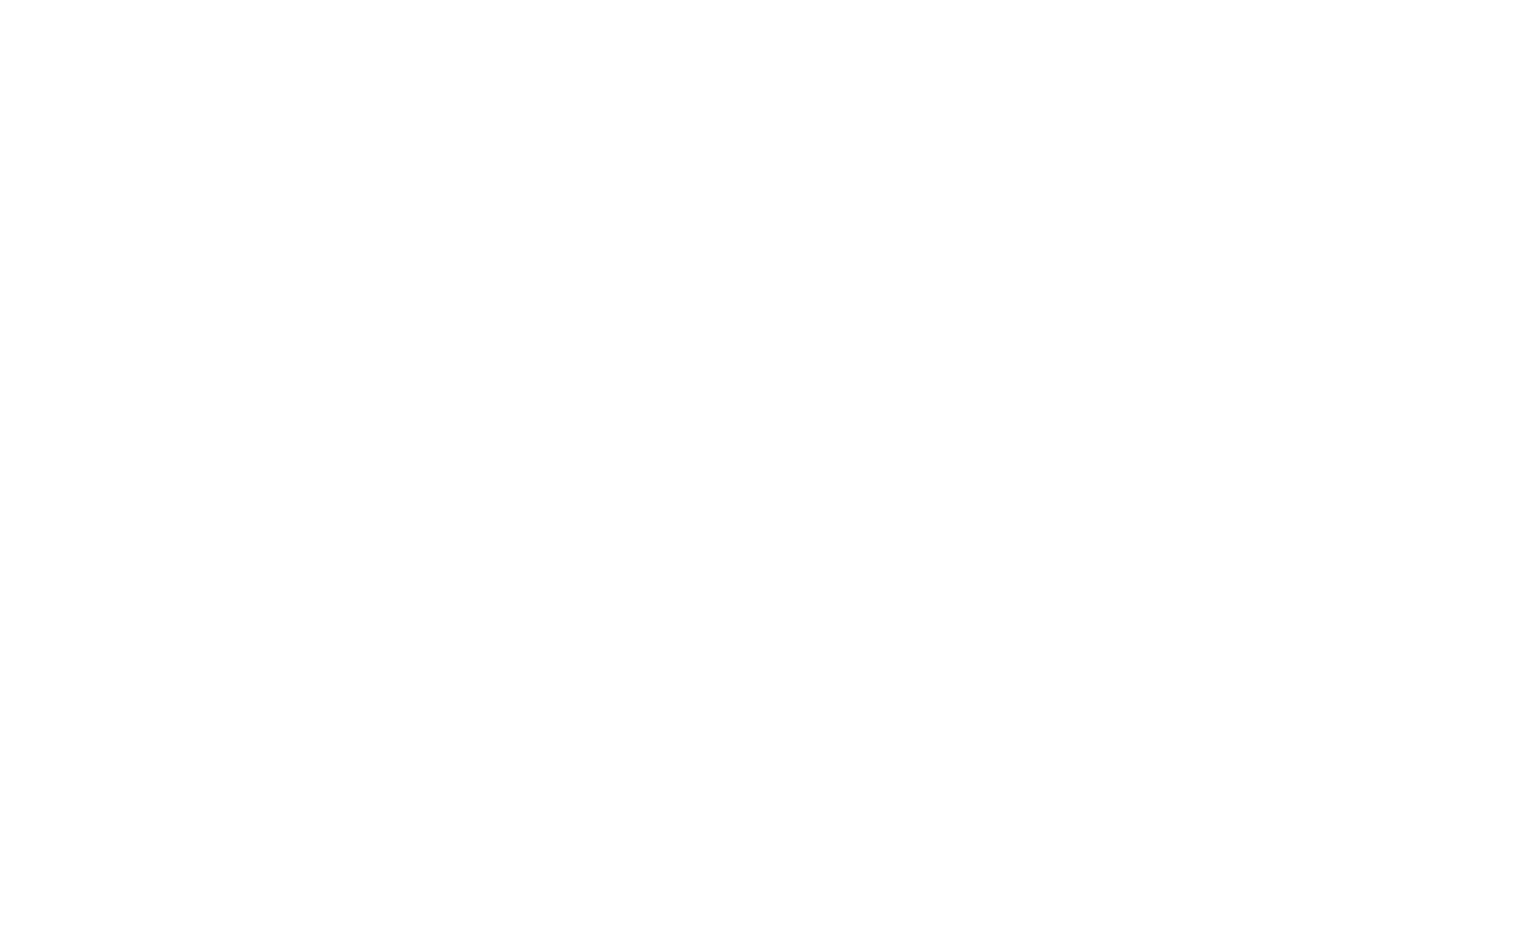 Mishra Dhatu Nigam Logo groß für dunkle Hintergründe (transparentes PNG)